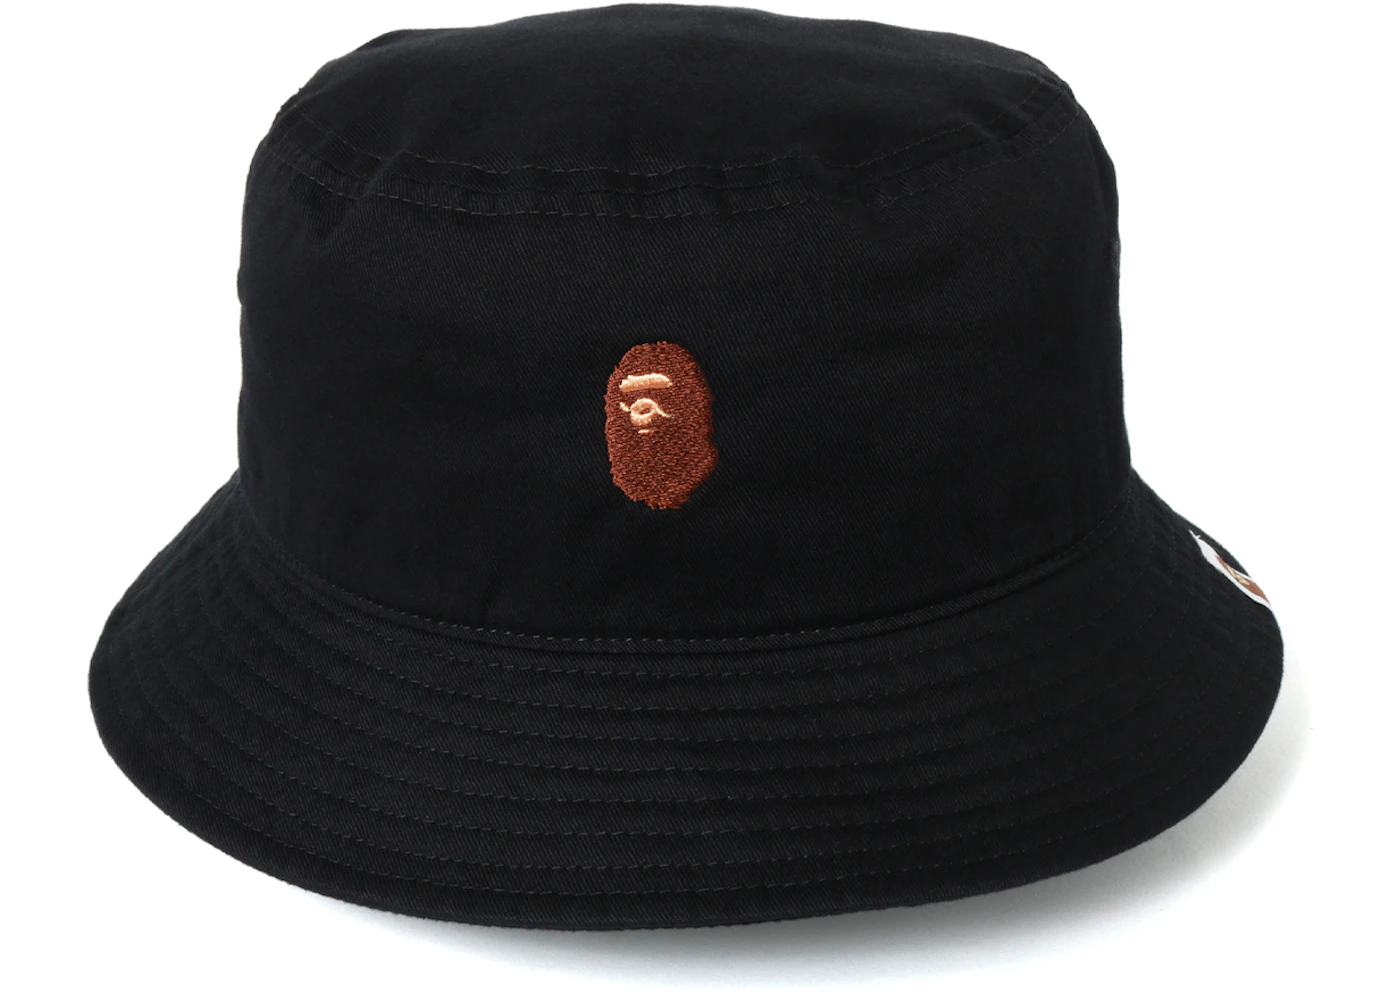 BAPE Ape Head Embroidery Bucket Hat Black Men's - SS19 - US